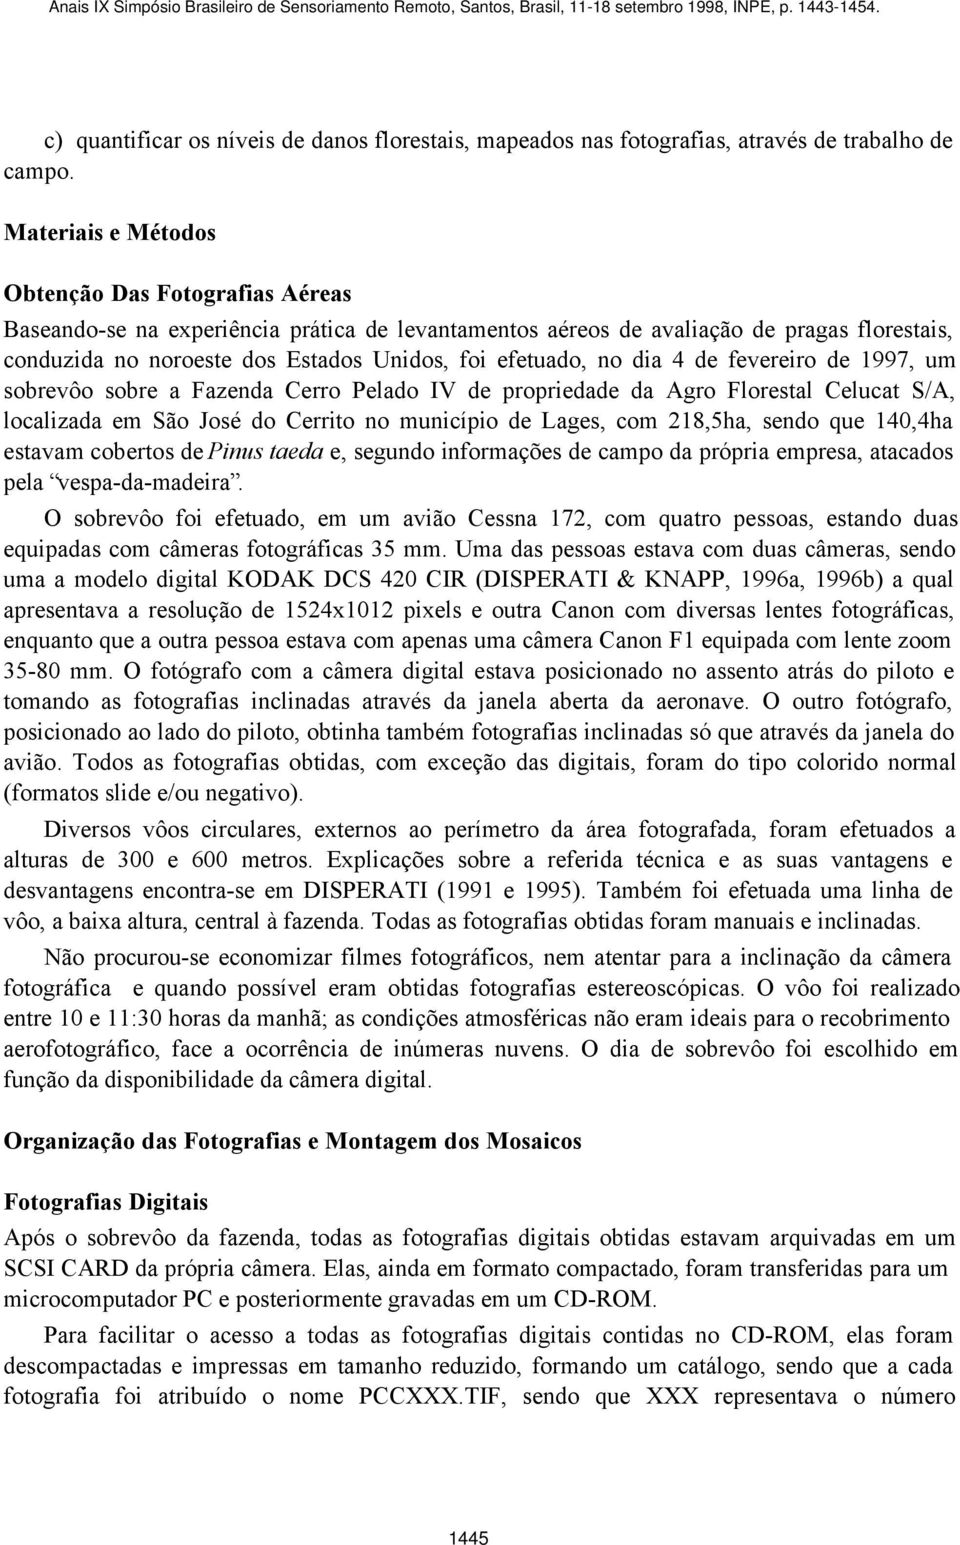 efetuado, no dia 4 de fevereiro de 1997, um sobrevôo sobre a Fazenda Cerro Pelado IV de propriedade da Agro Florestal Celucat S/A, localizada em São José do Cerrito no município de Lages, com